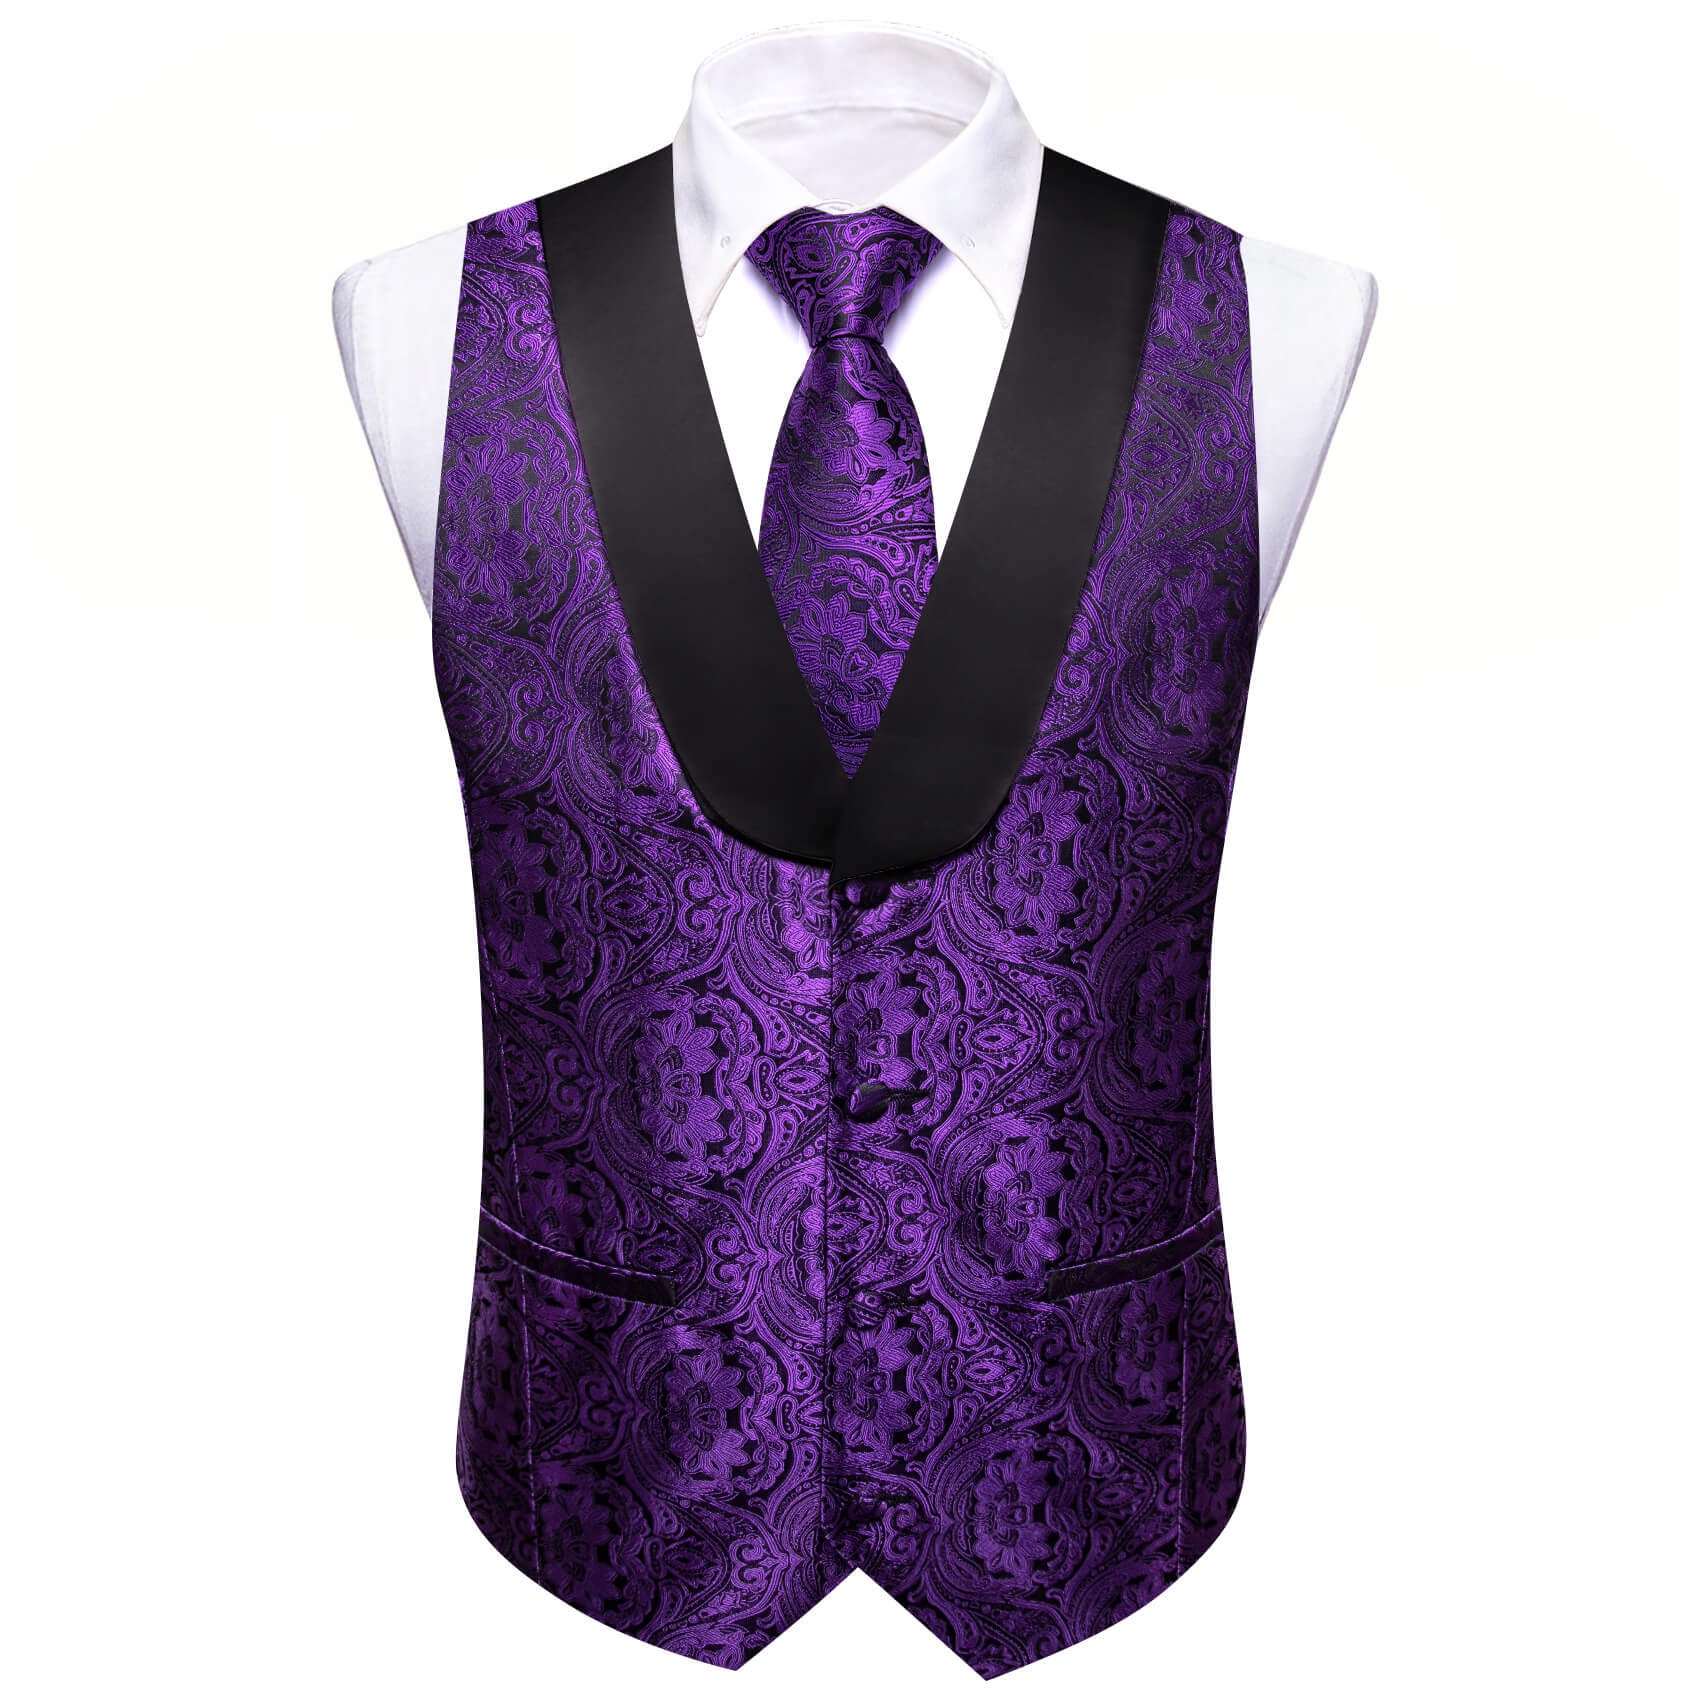 Barry.wang Shawl Collar Vest Violet Purple Paisley Men's Silk Vest Tie Set